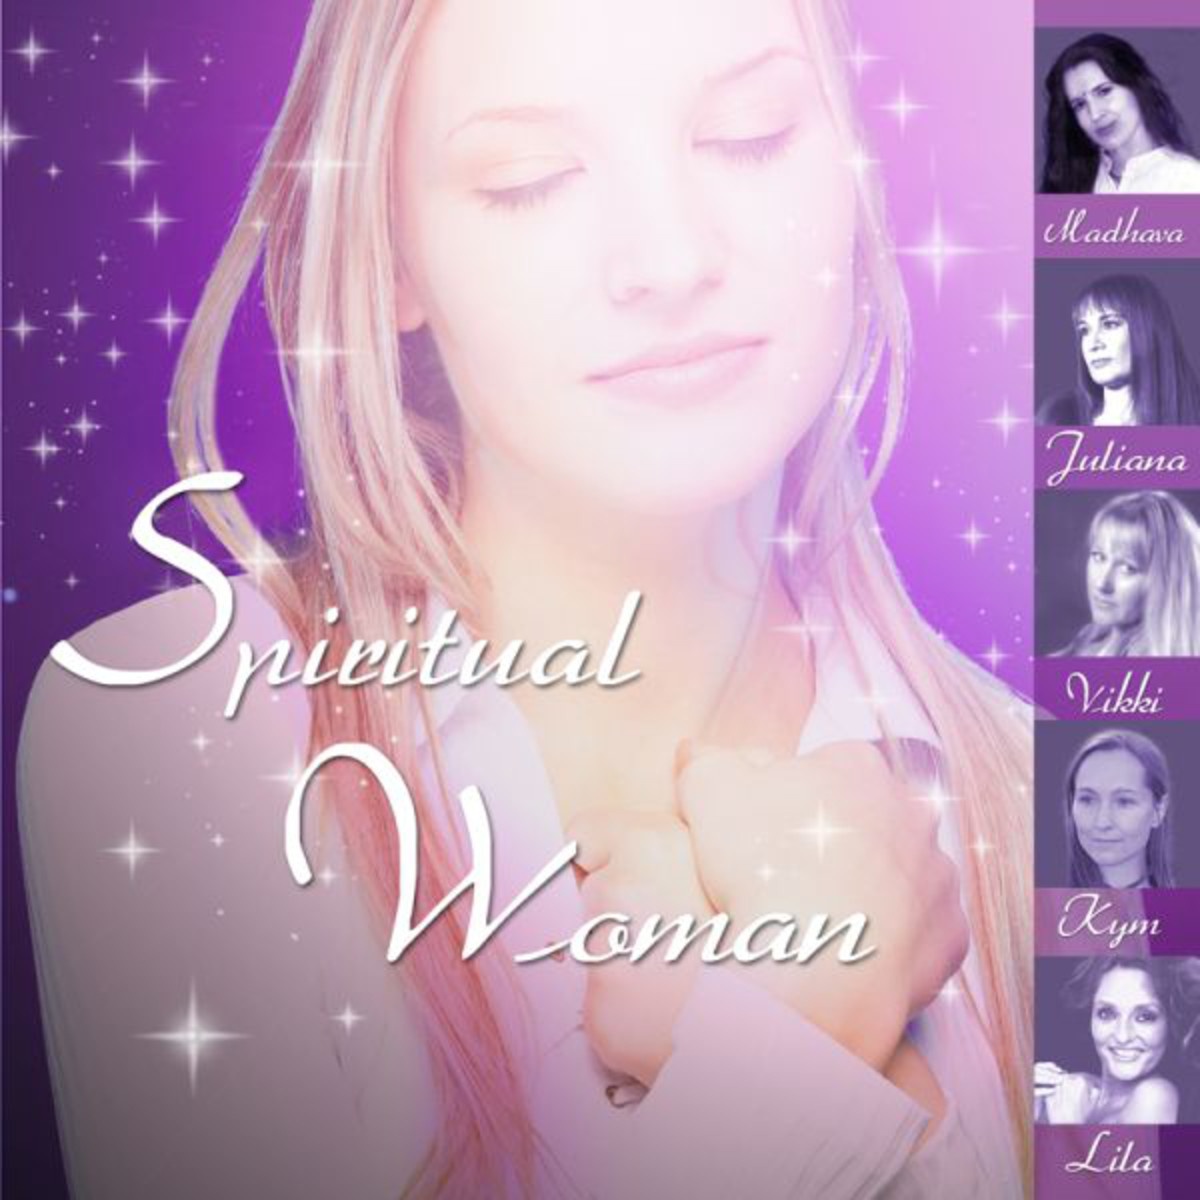 Spiritual Woman